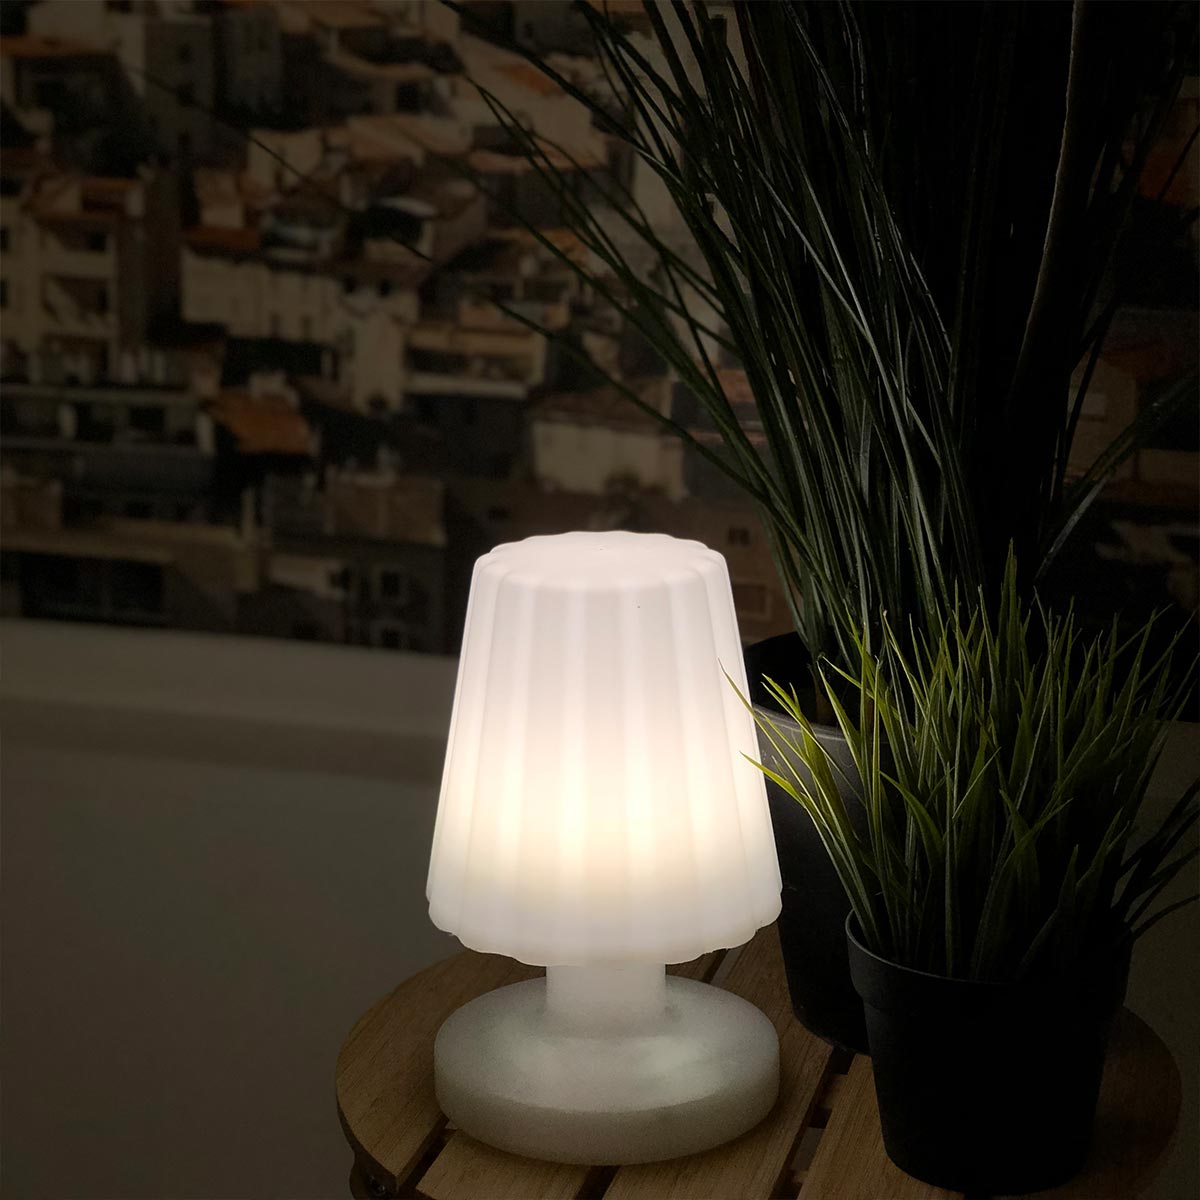 Mini lampe à poser rechargeable sans fil LED blanc chaud dimmable LADY MINI H22cm - REDDECO.com